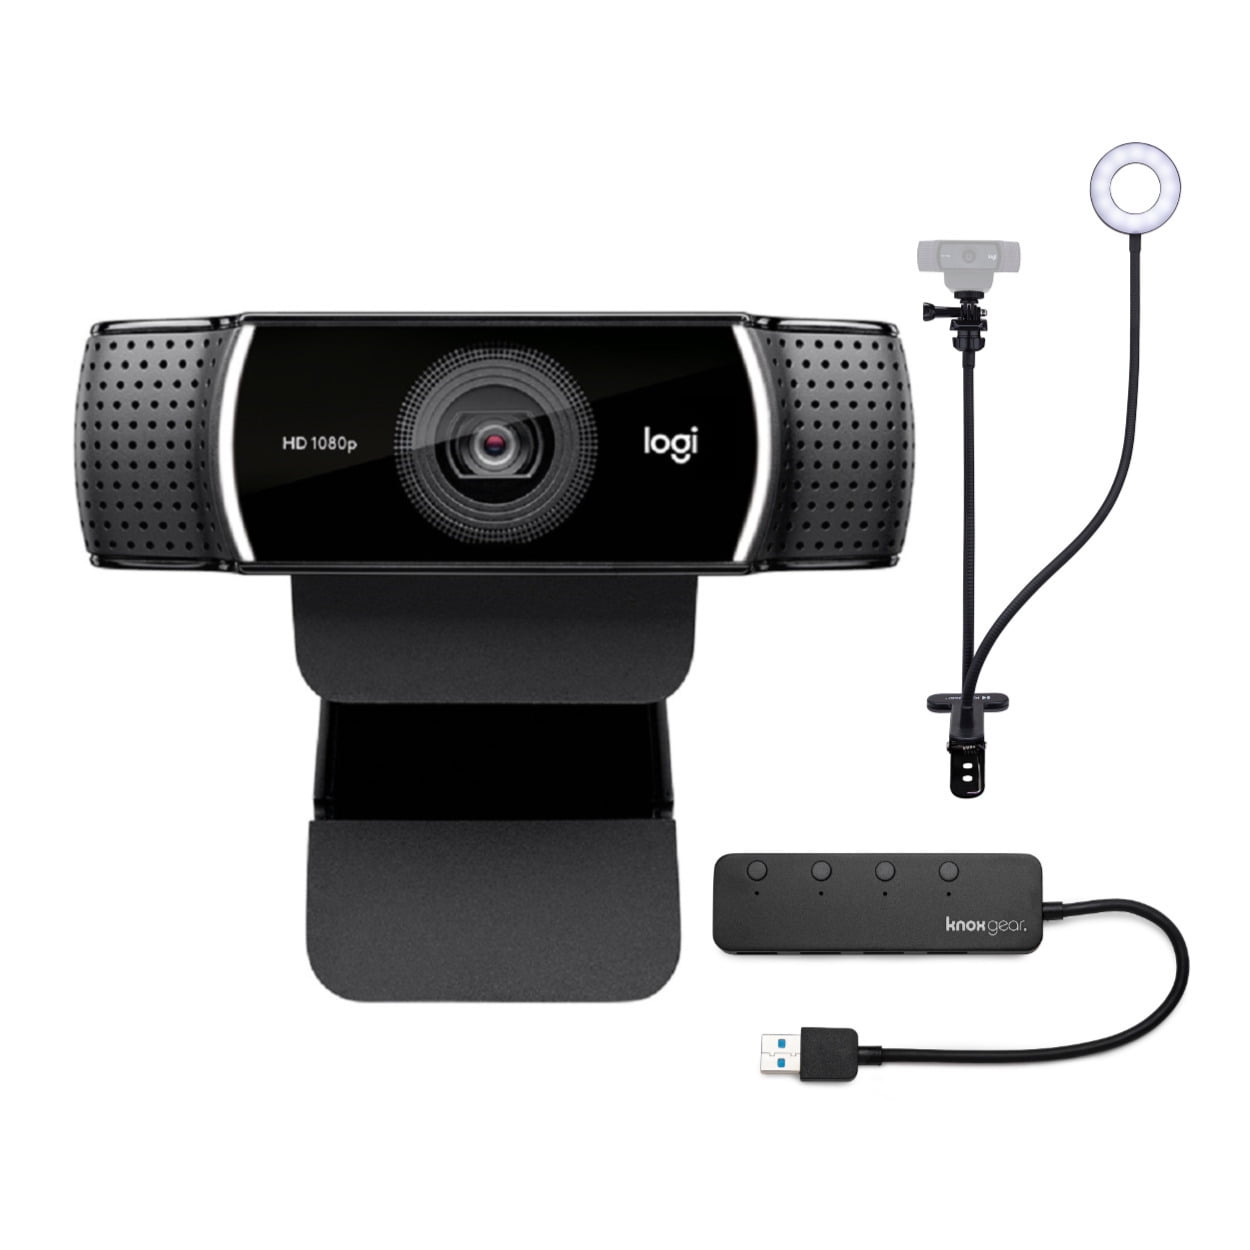 forbruger Til sandheden Tung lastbil Logitech C922 Pro Stream 1080p Webcam with Stand and 4-Port USB Hub -  Walmart.com